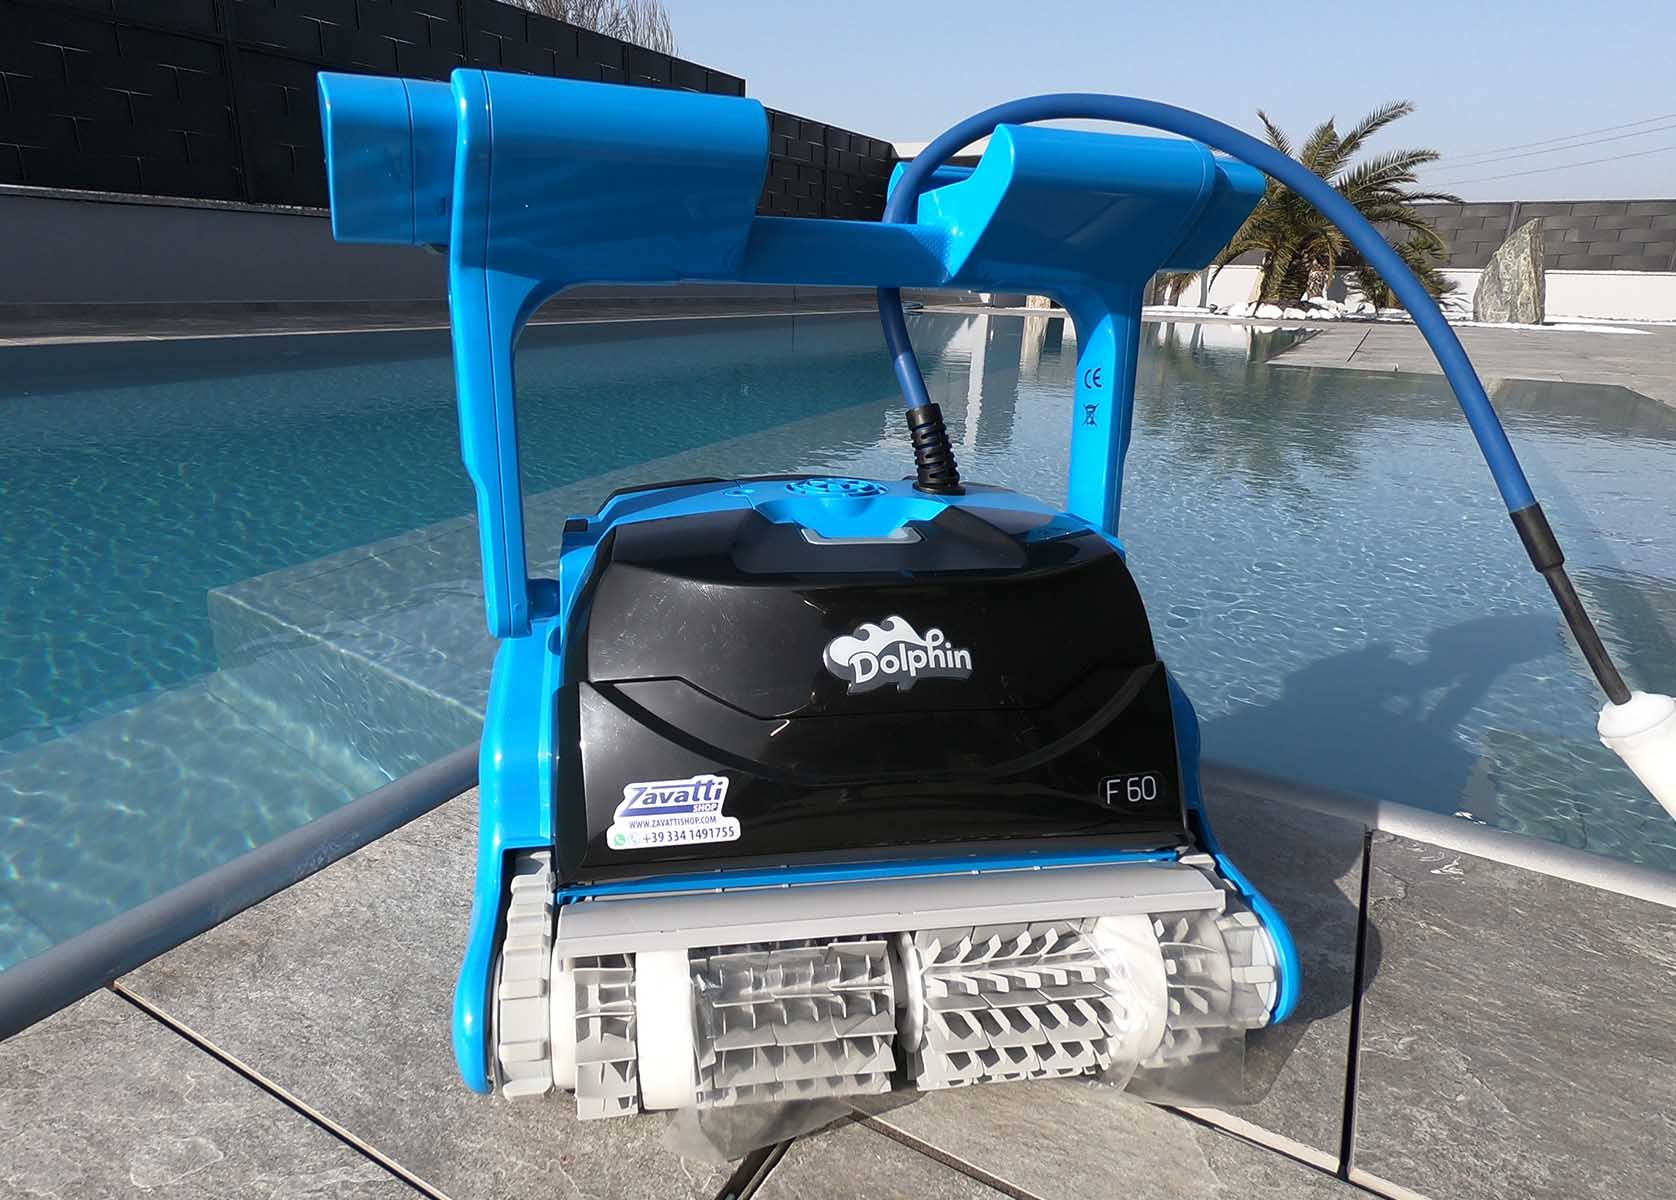 Dolphin F60, robottino piscine Maytronics. guida manuale del robot in acqua.